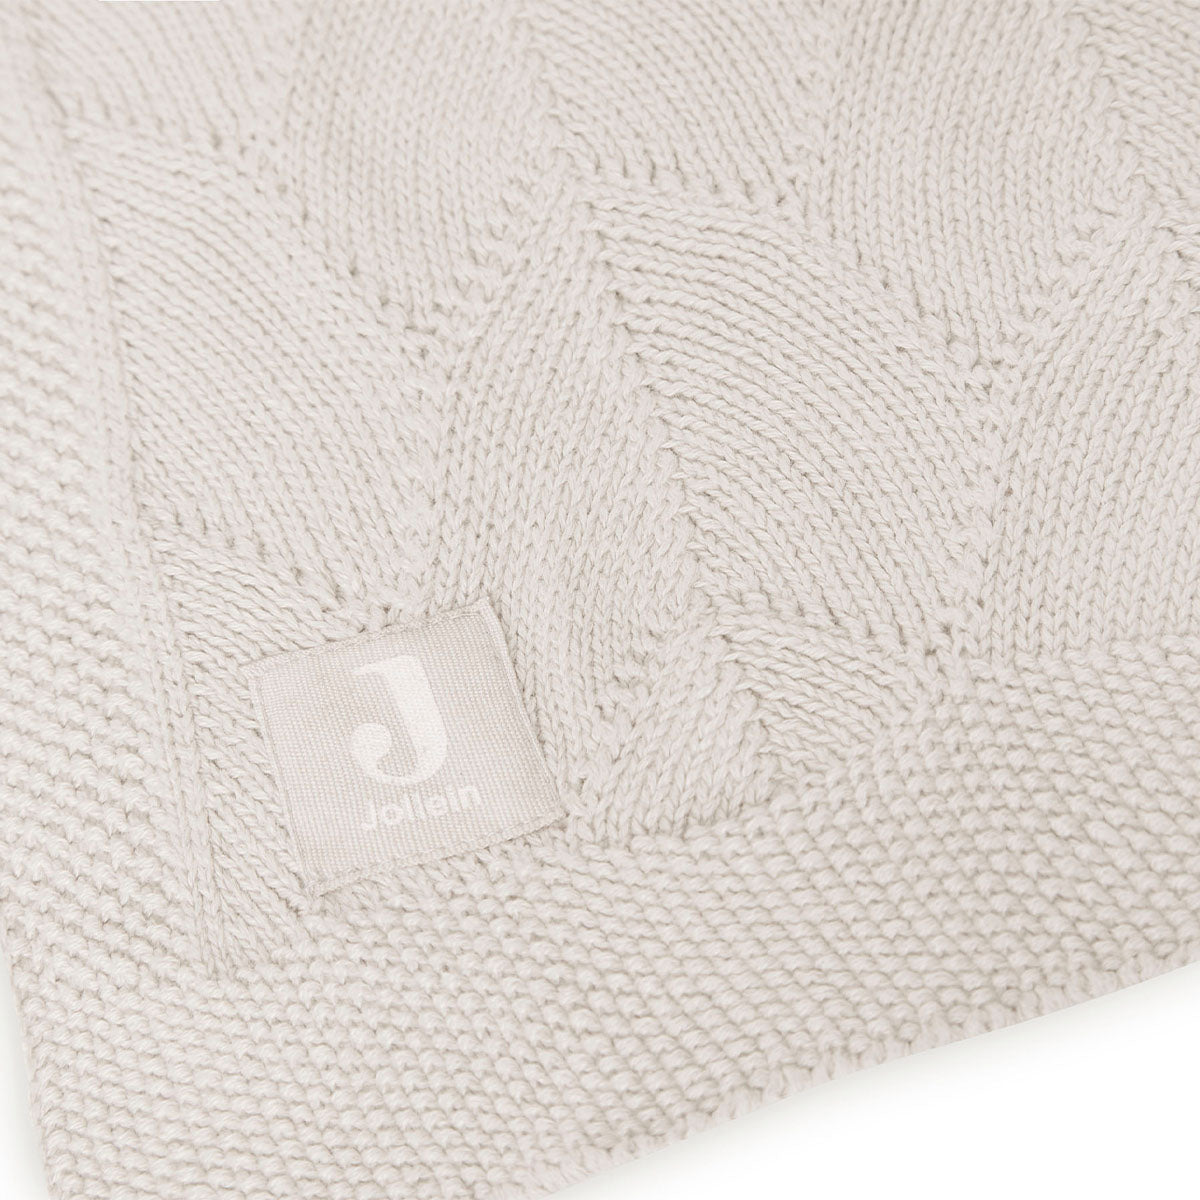 Houd je kindje warm met de hippe wiegdeken (75x100 cm) shell knit nougat GOTS van Jollein. Voorzien van een gebreid motief en gemaakt van het allerzachtste katoen. Ook geschikt voor onderweg in de maxi cosi. VanZus